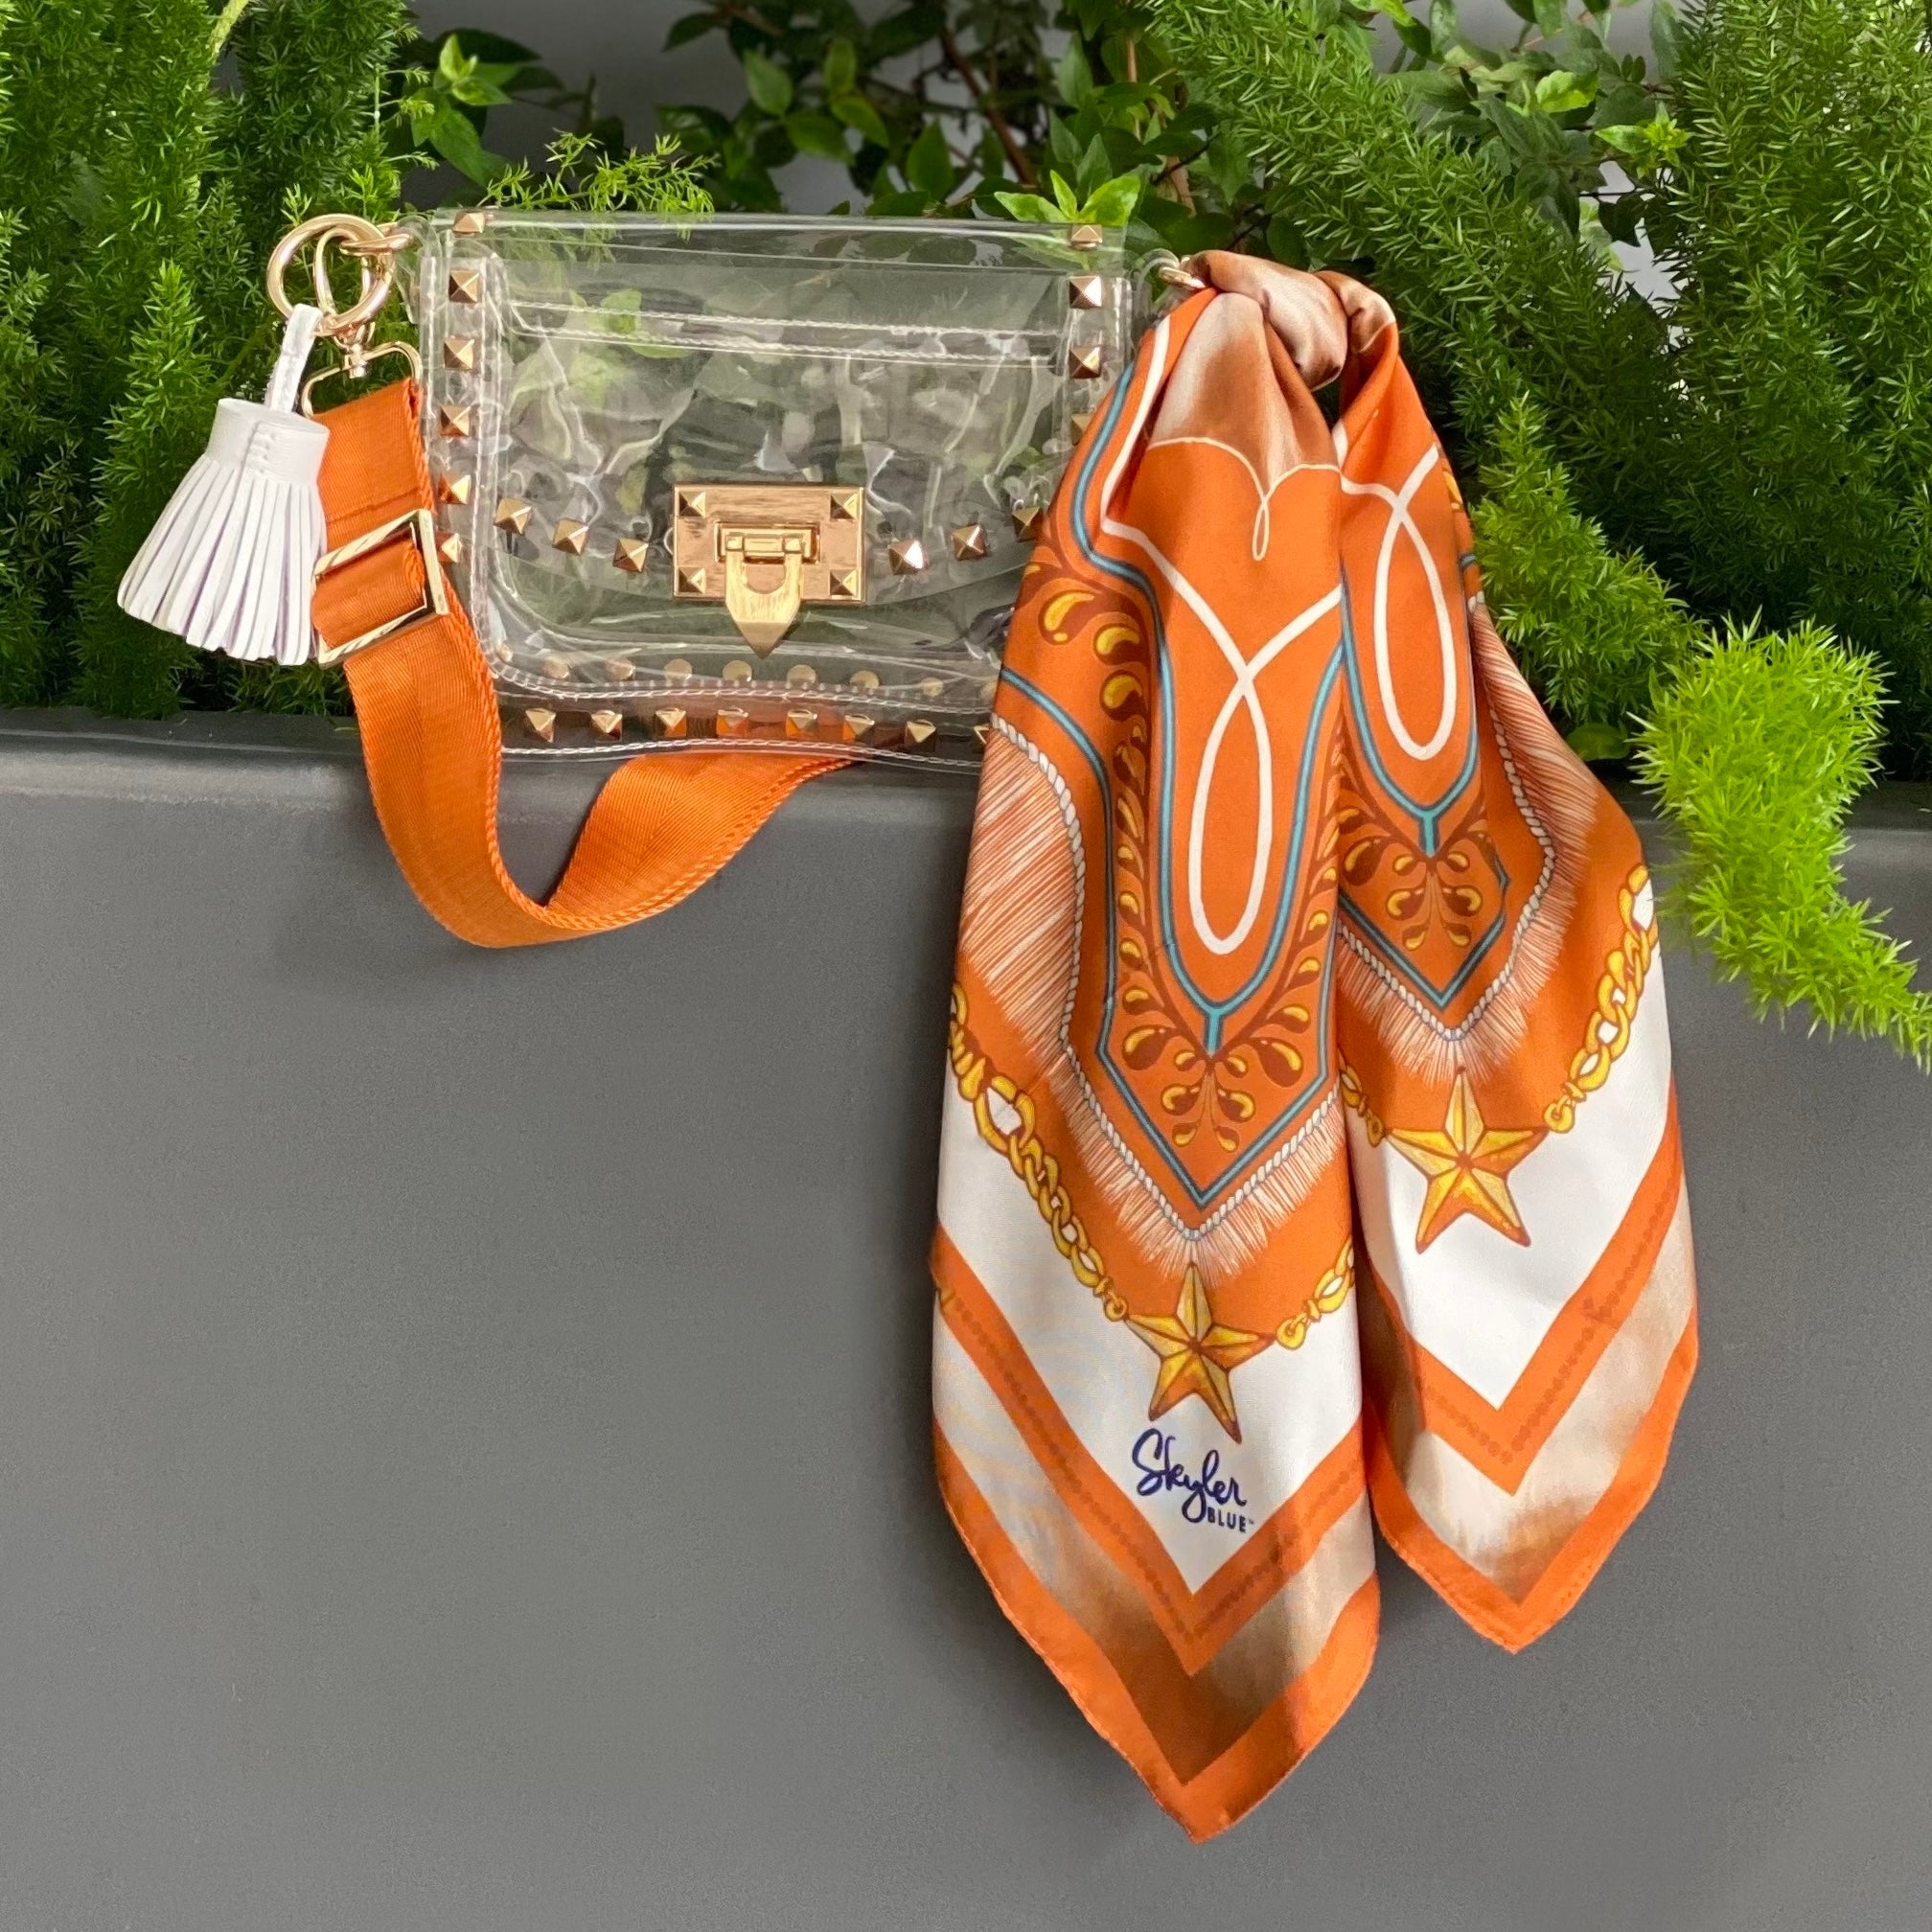 Handmade Louis Vuitton clear stadium bag